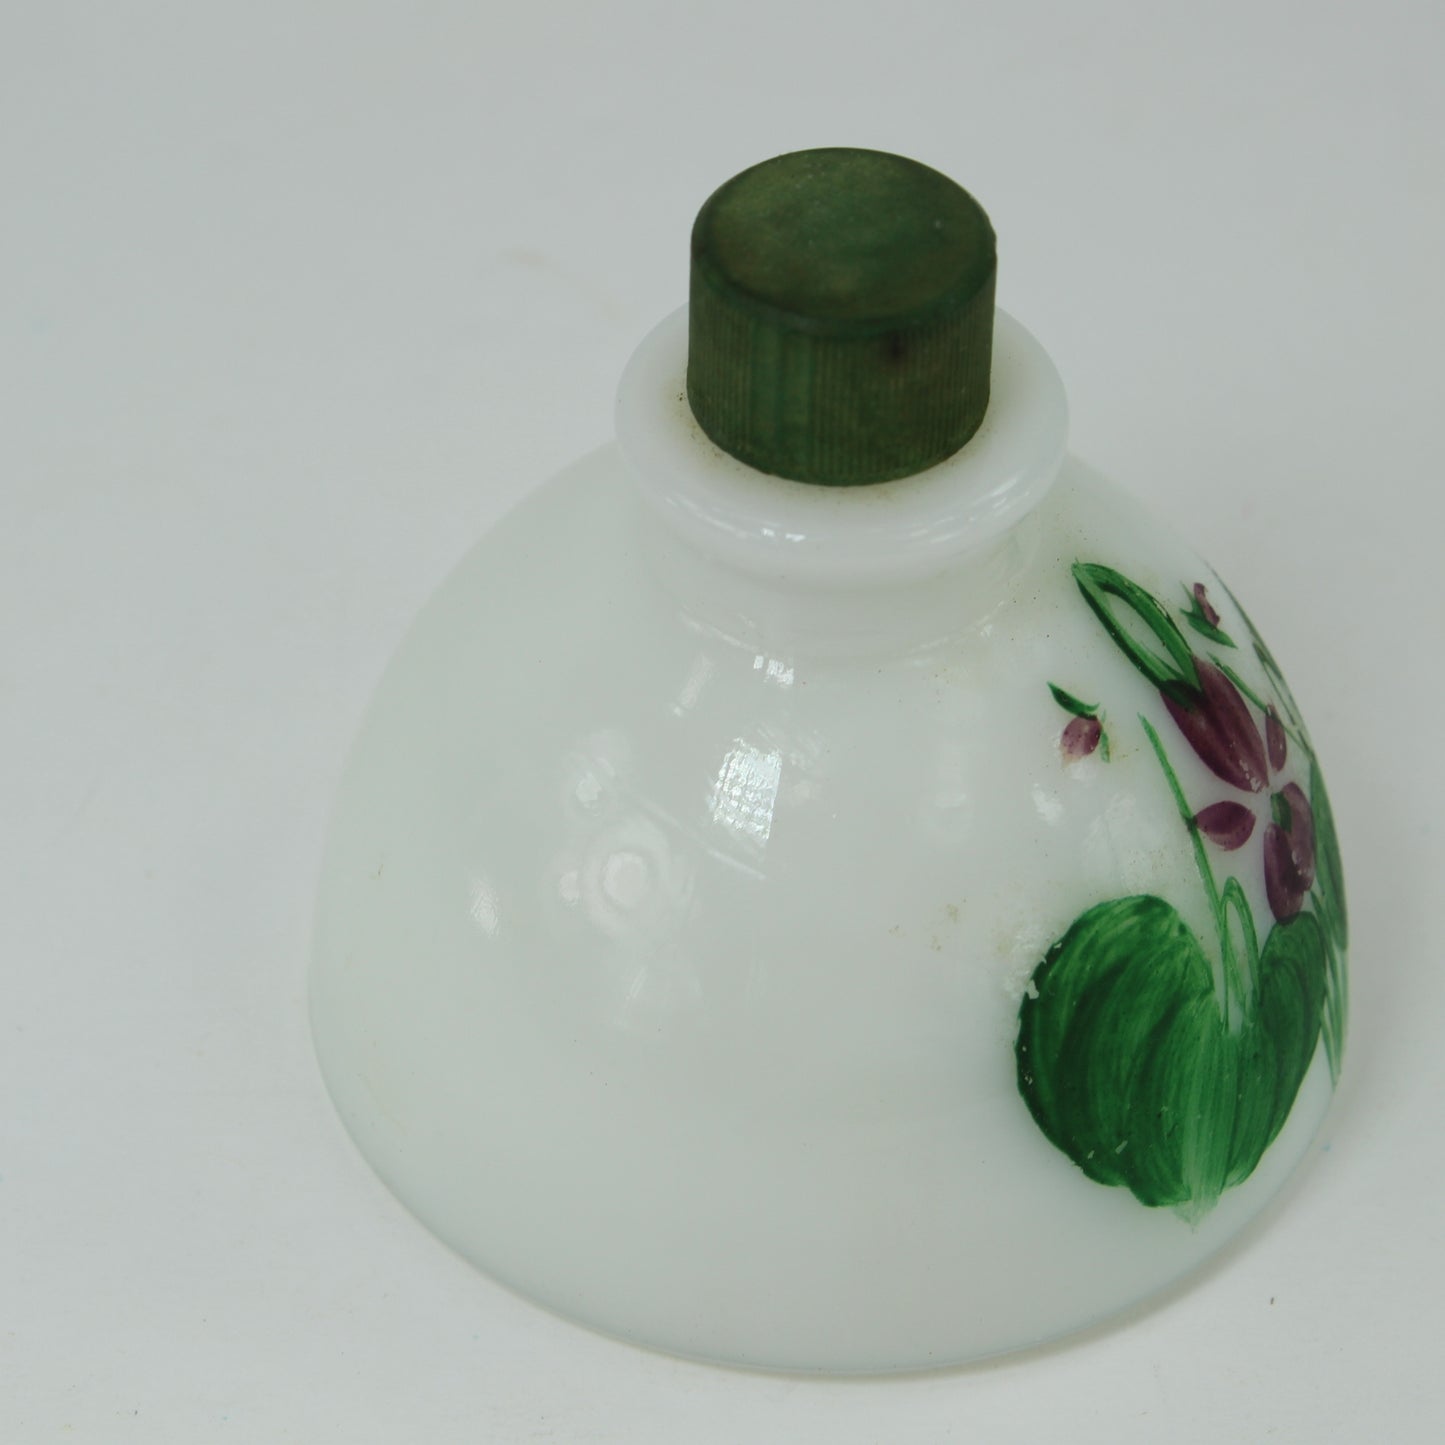 Vintage Lownds Pateman Perfume Vanite Bottle Violets England floral violet and leaves